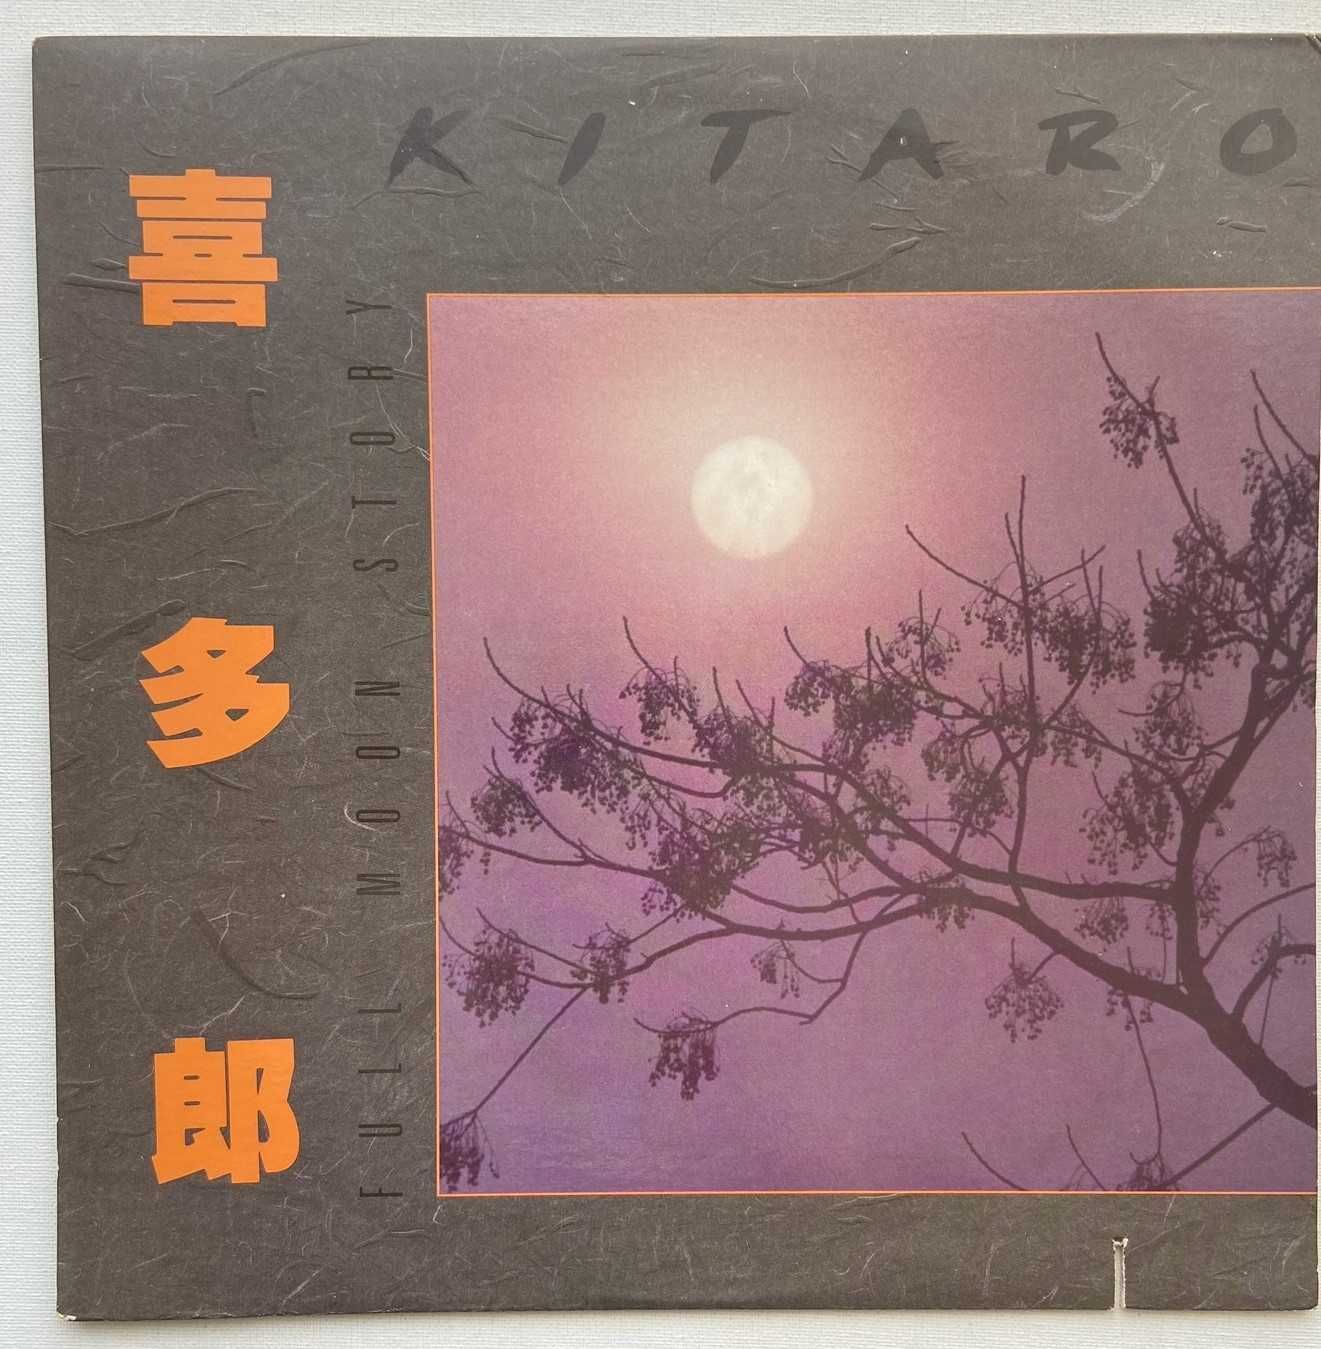 Kitaro – Full Moon Story